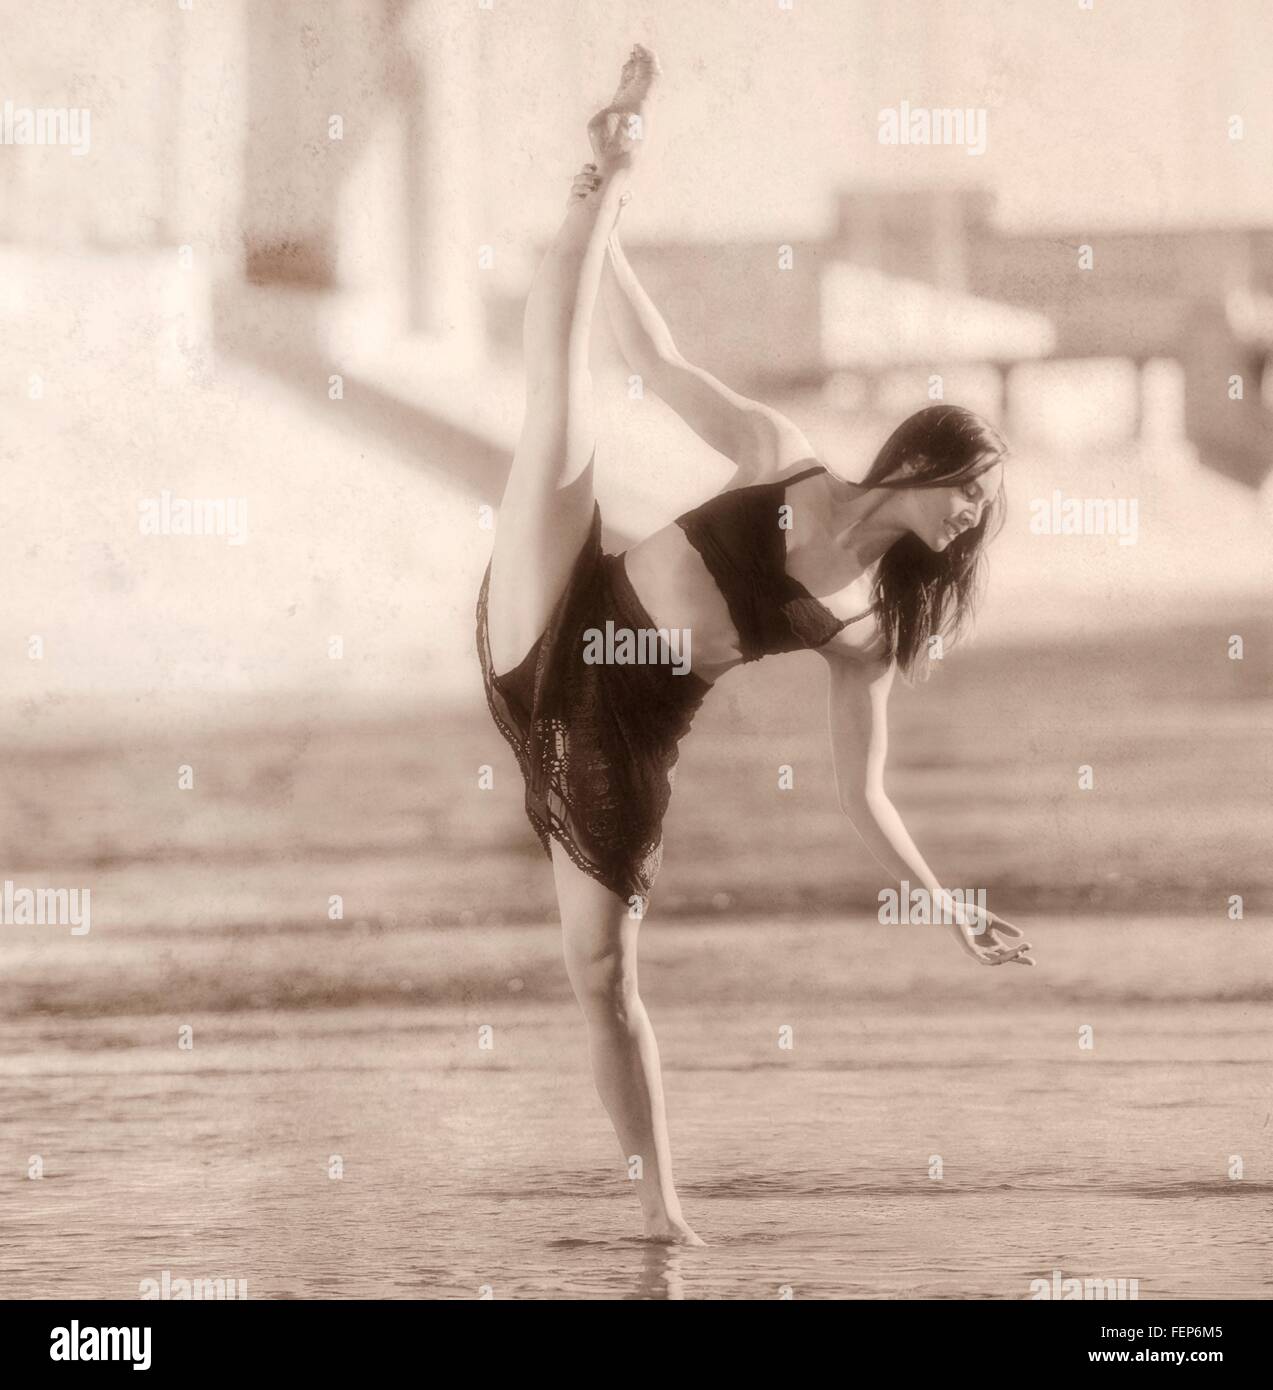 Jeune femme jambe soulevée, en équilibre sur une jambe, b&w, Los Angeles, Californie, USA Banque D'Images